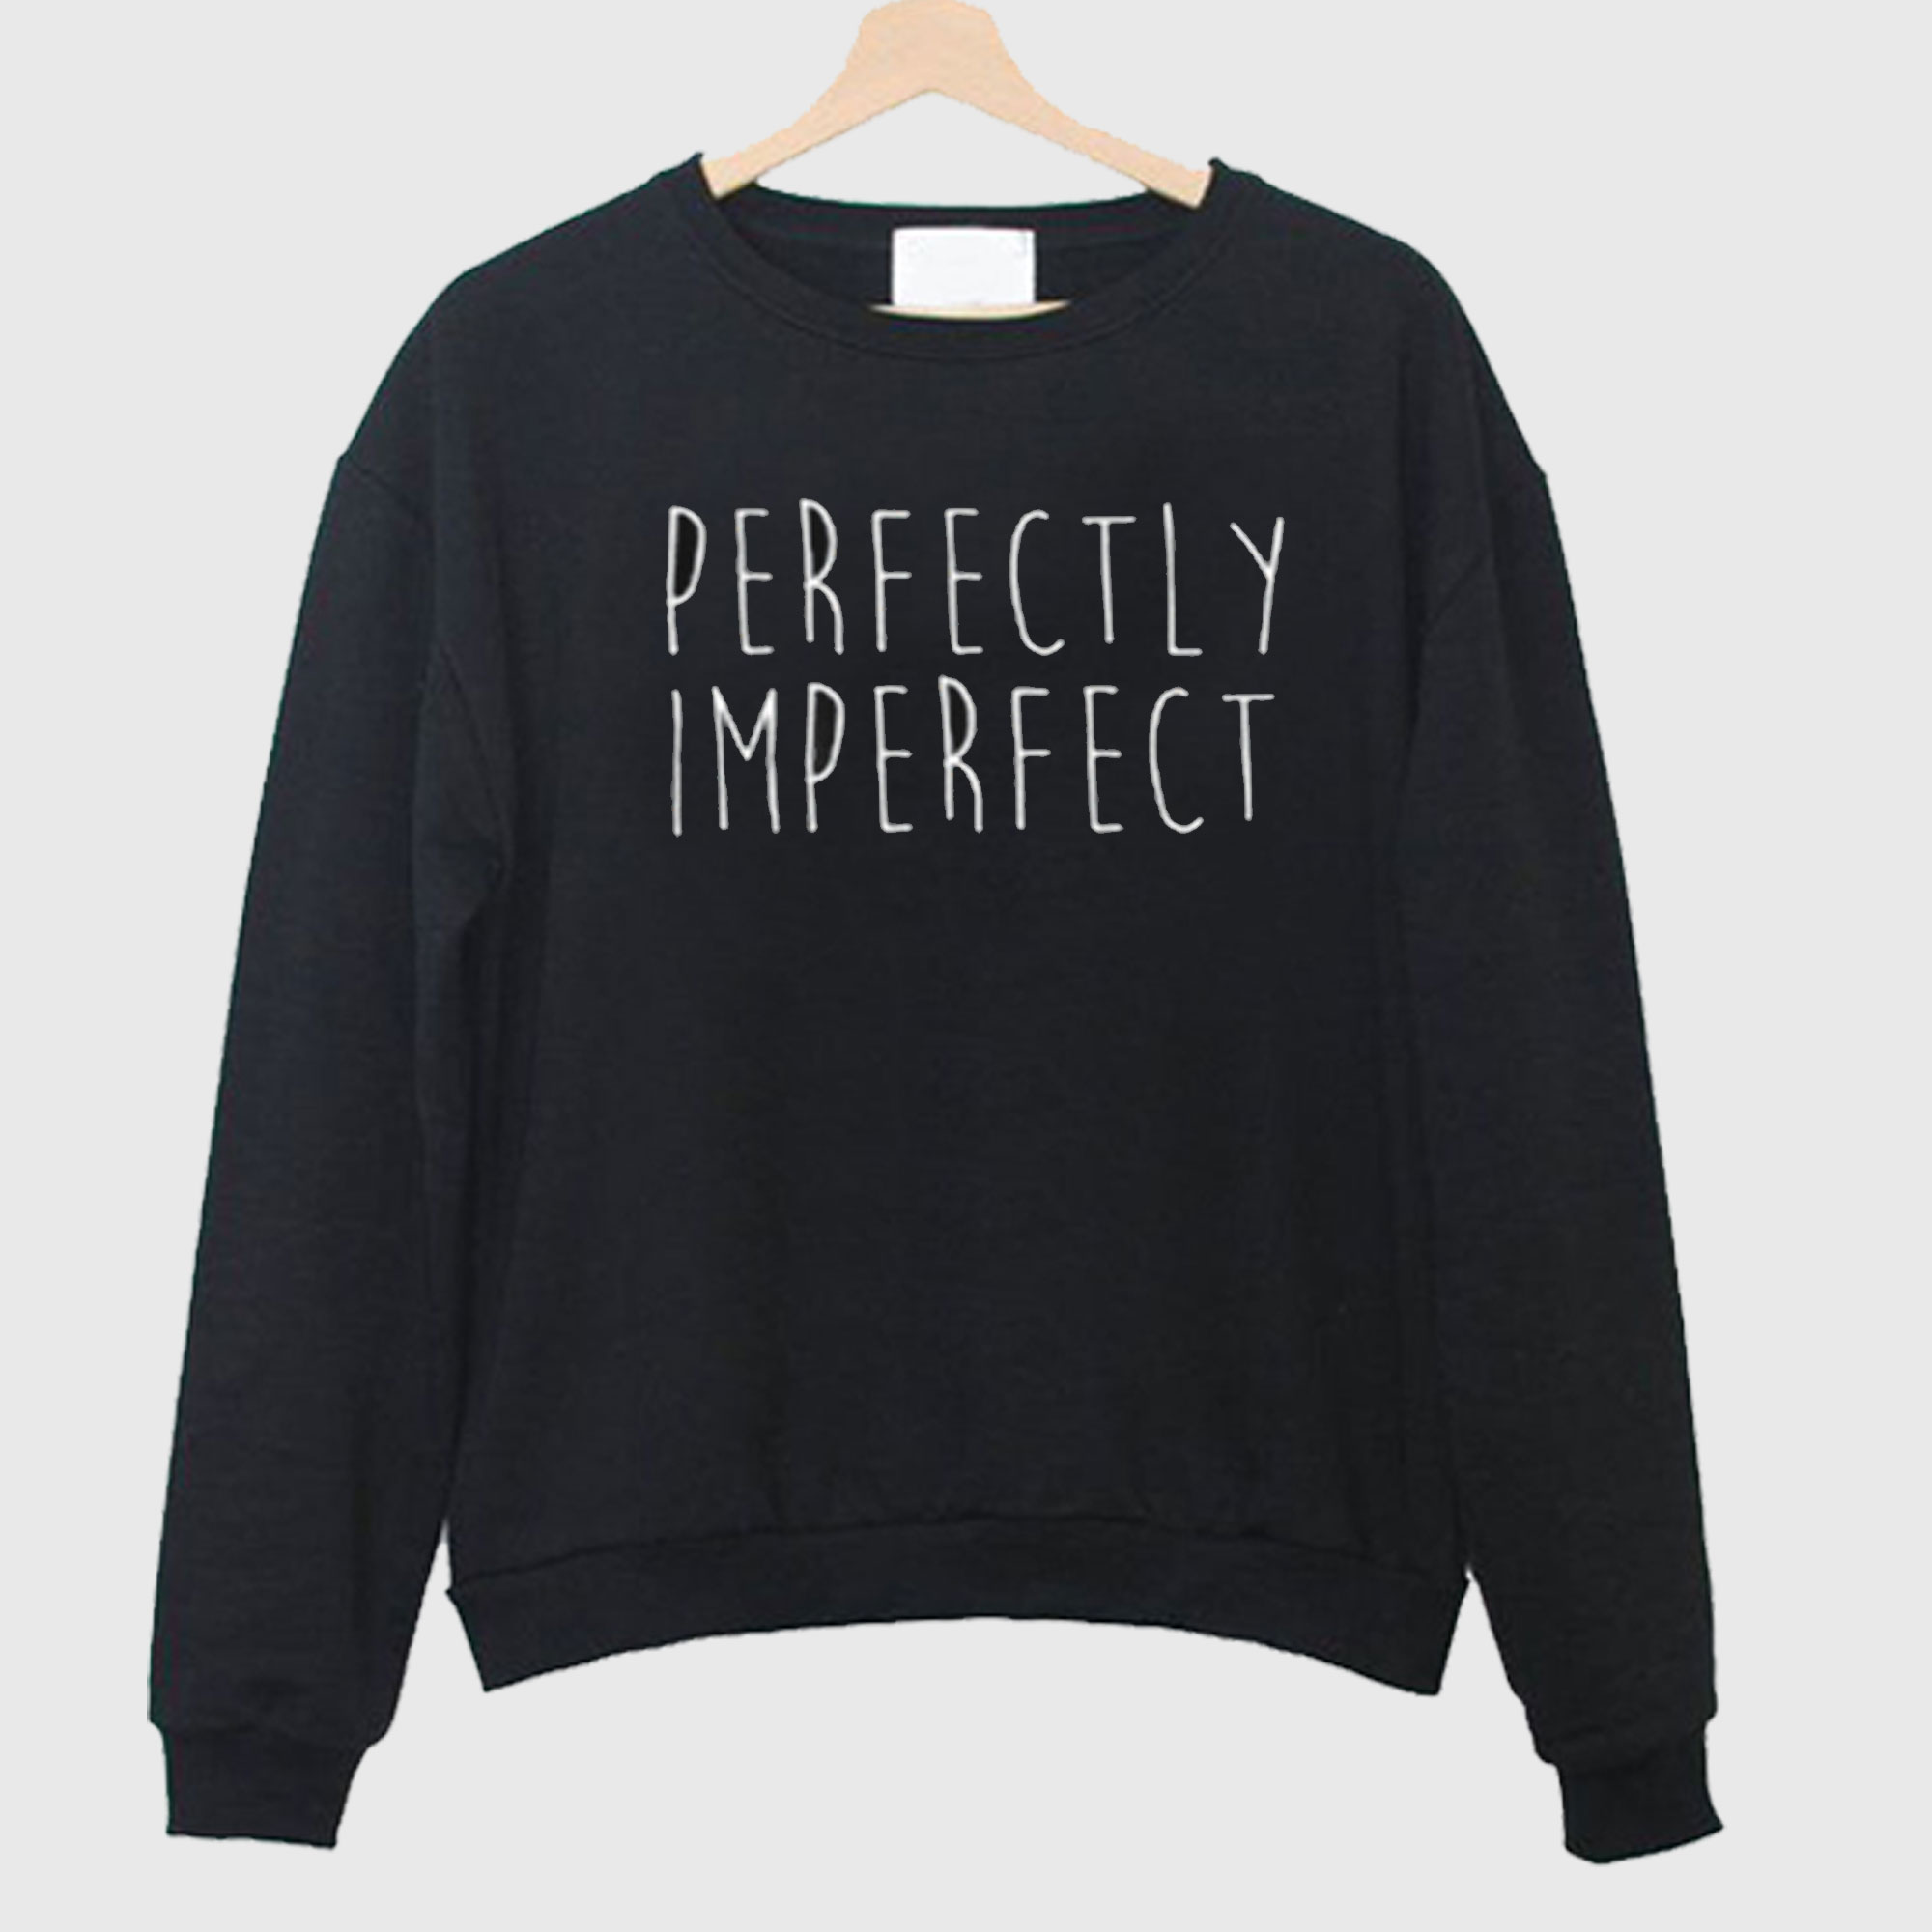 Perfectly Imperfect sweatshirt